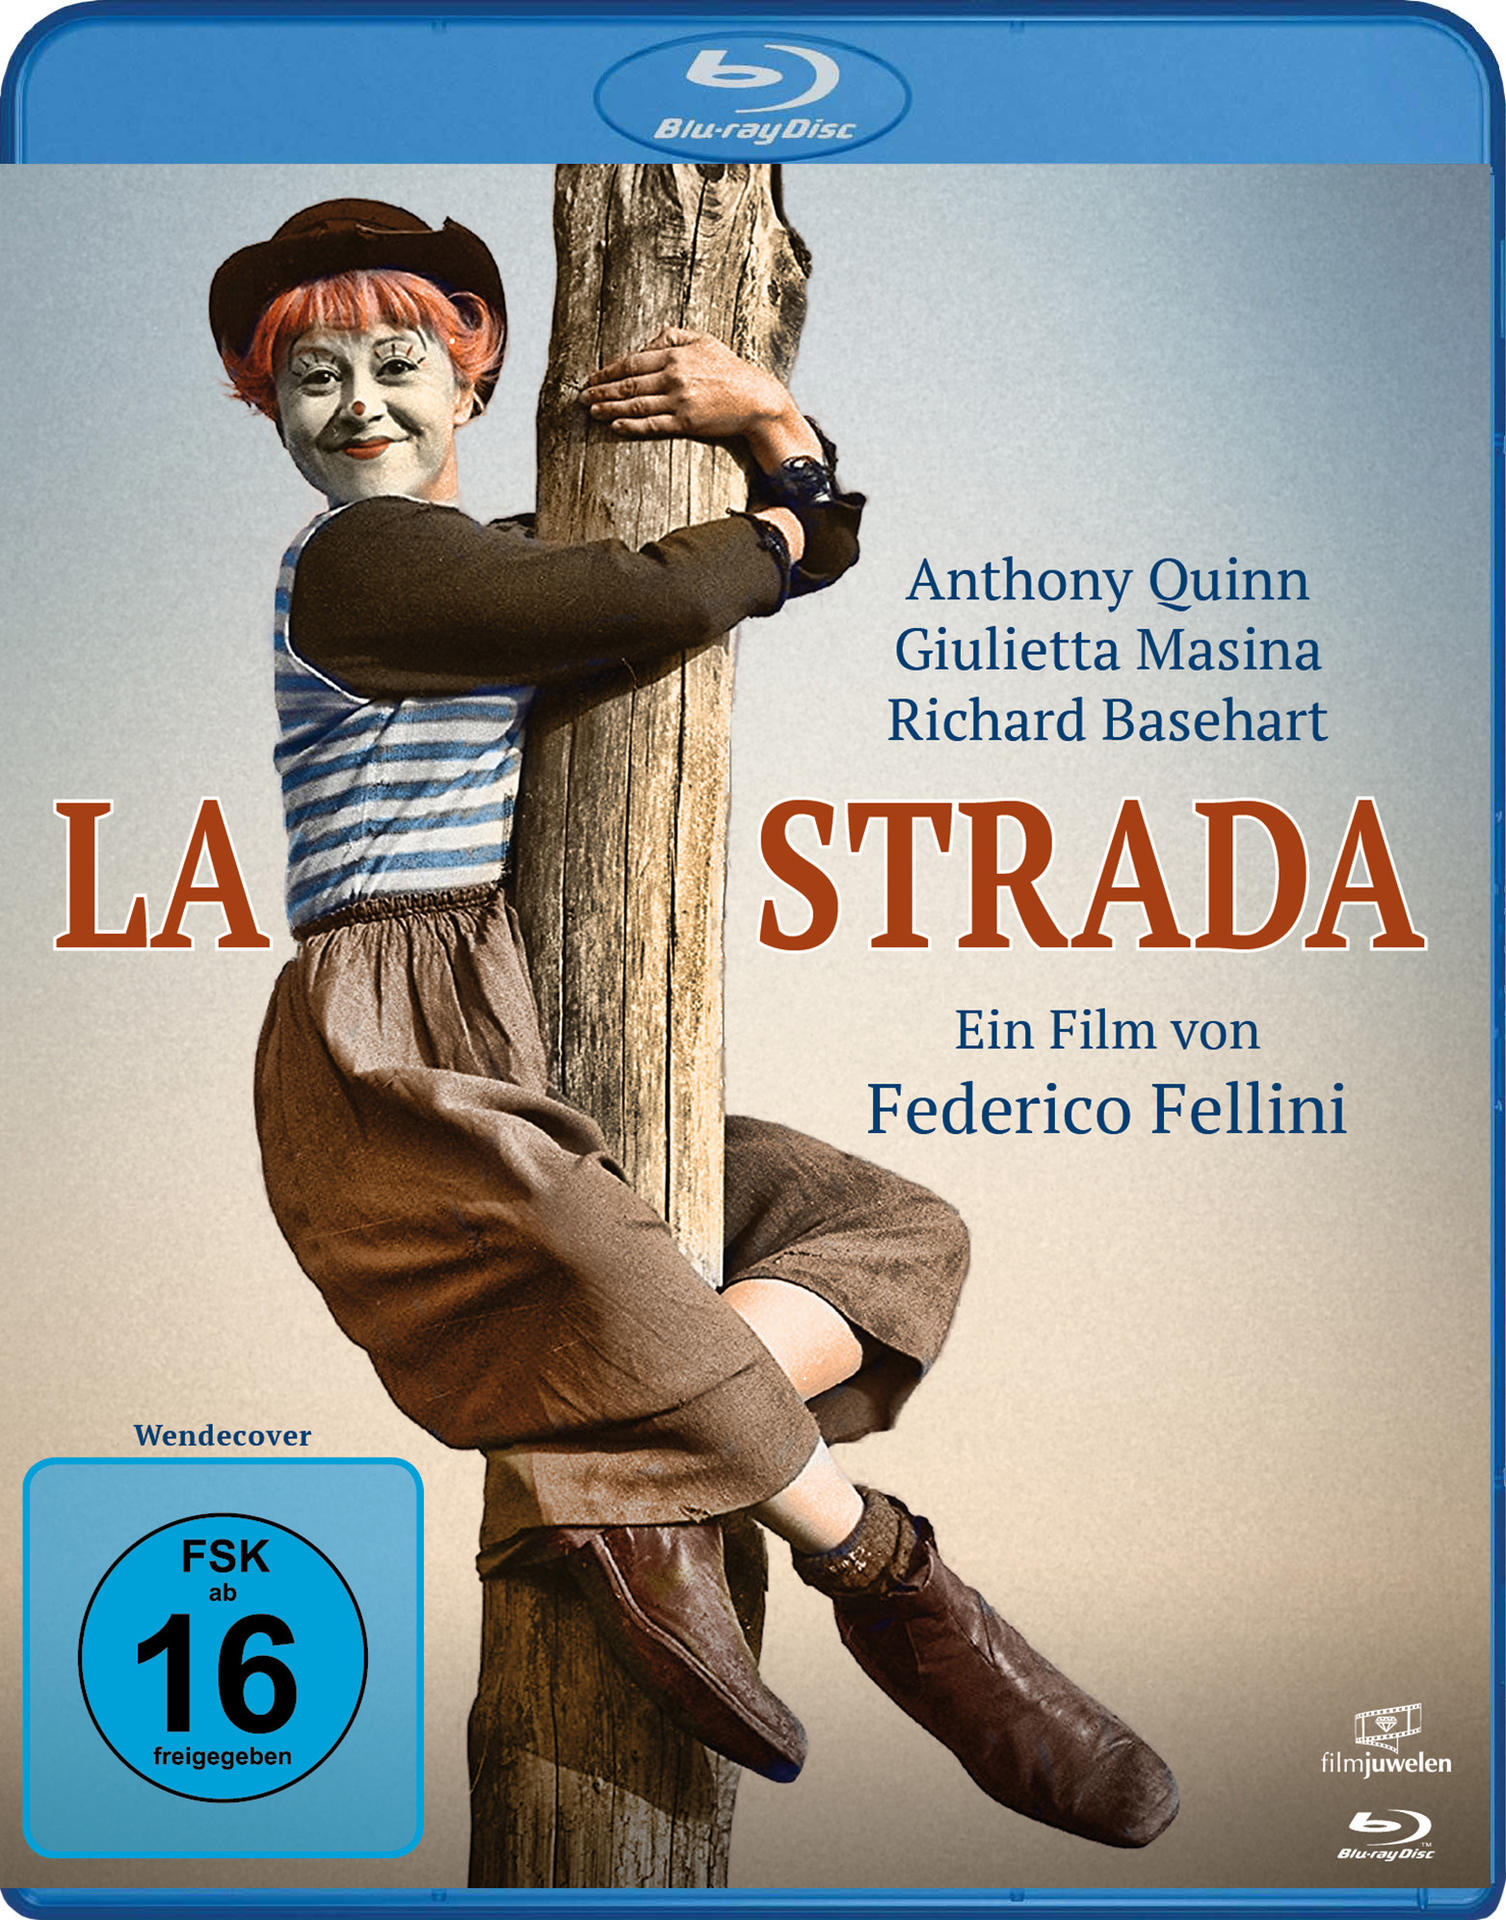 LA STRADA-DAS LIED DER STRASSE Blu-ray